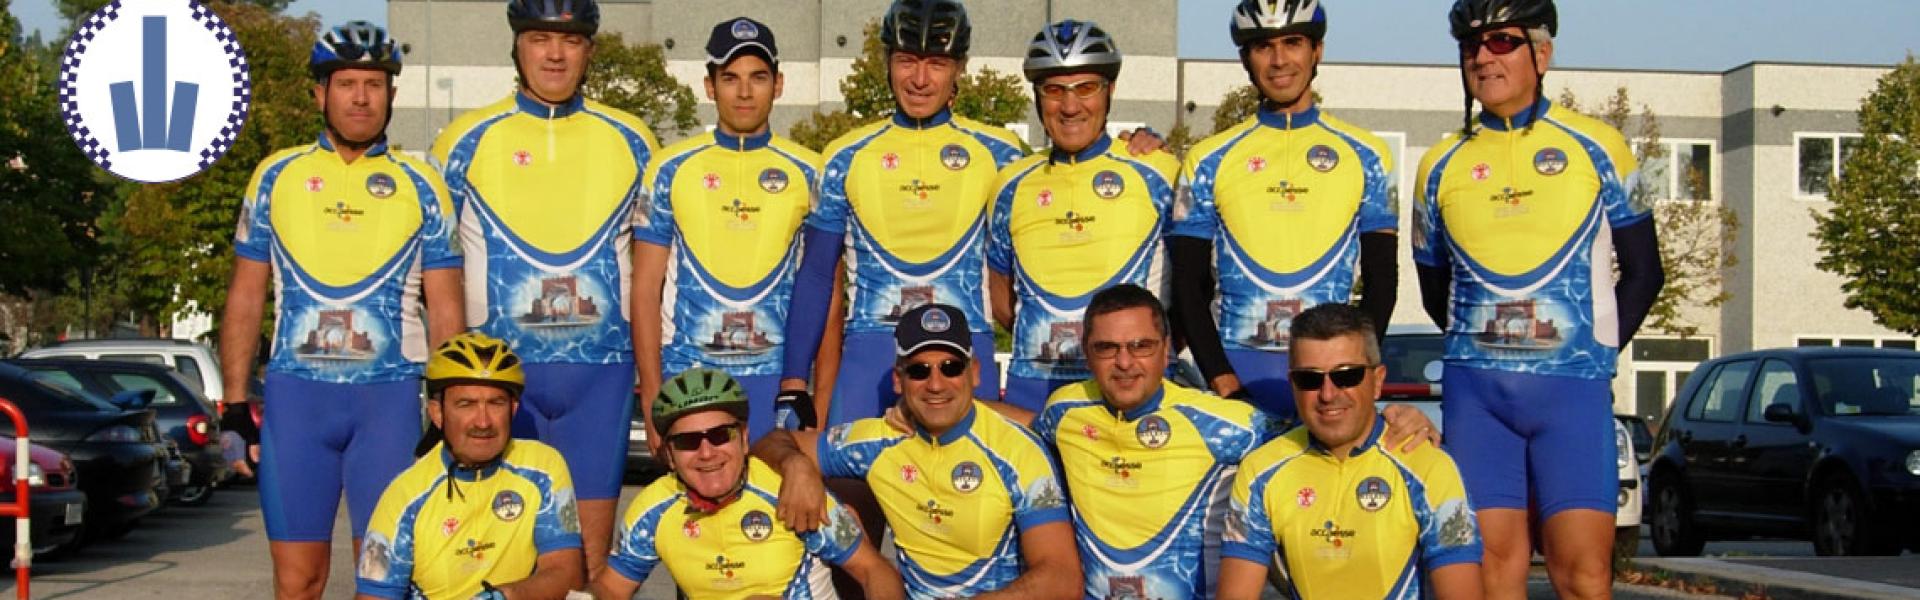 Squadra ciclistica della Polizia Municipale di Rimini